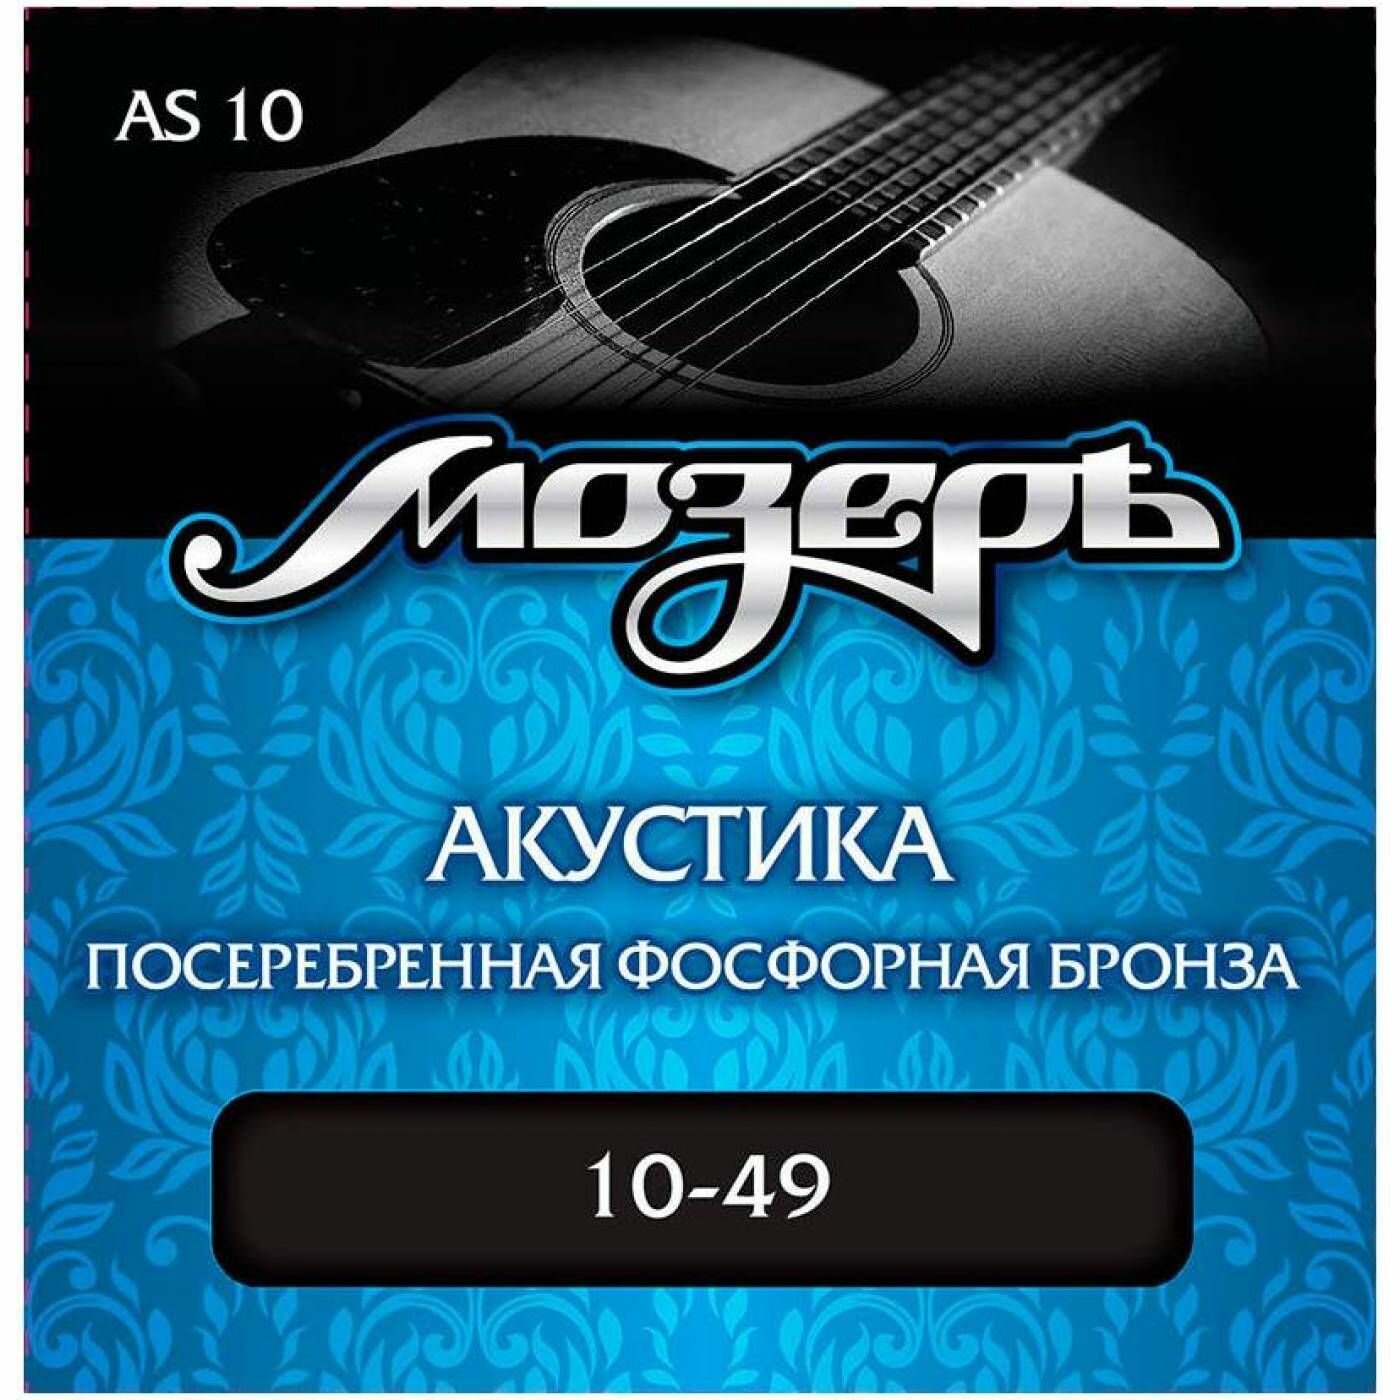 Струны для акустической гитары Мозеръ AS10